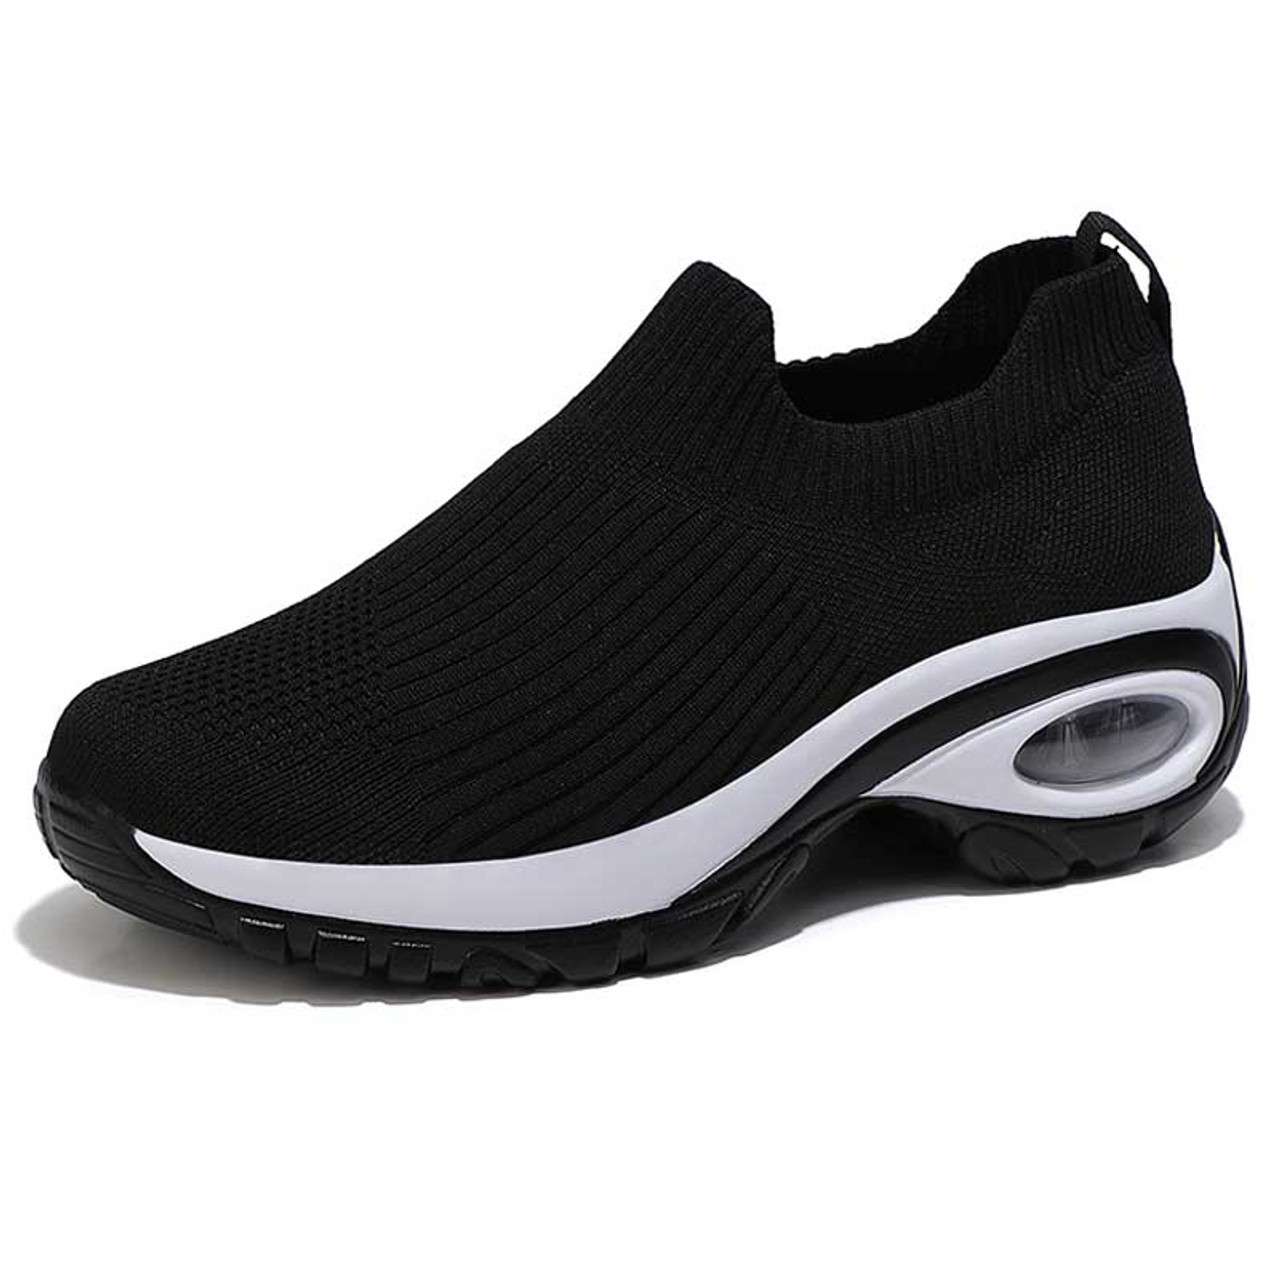 Black stripe slip on double rocker bottom sneaker | Womens rocker shoes ...